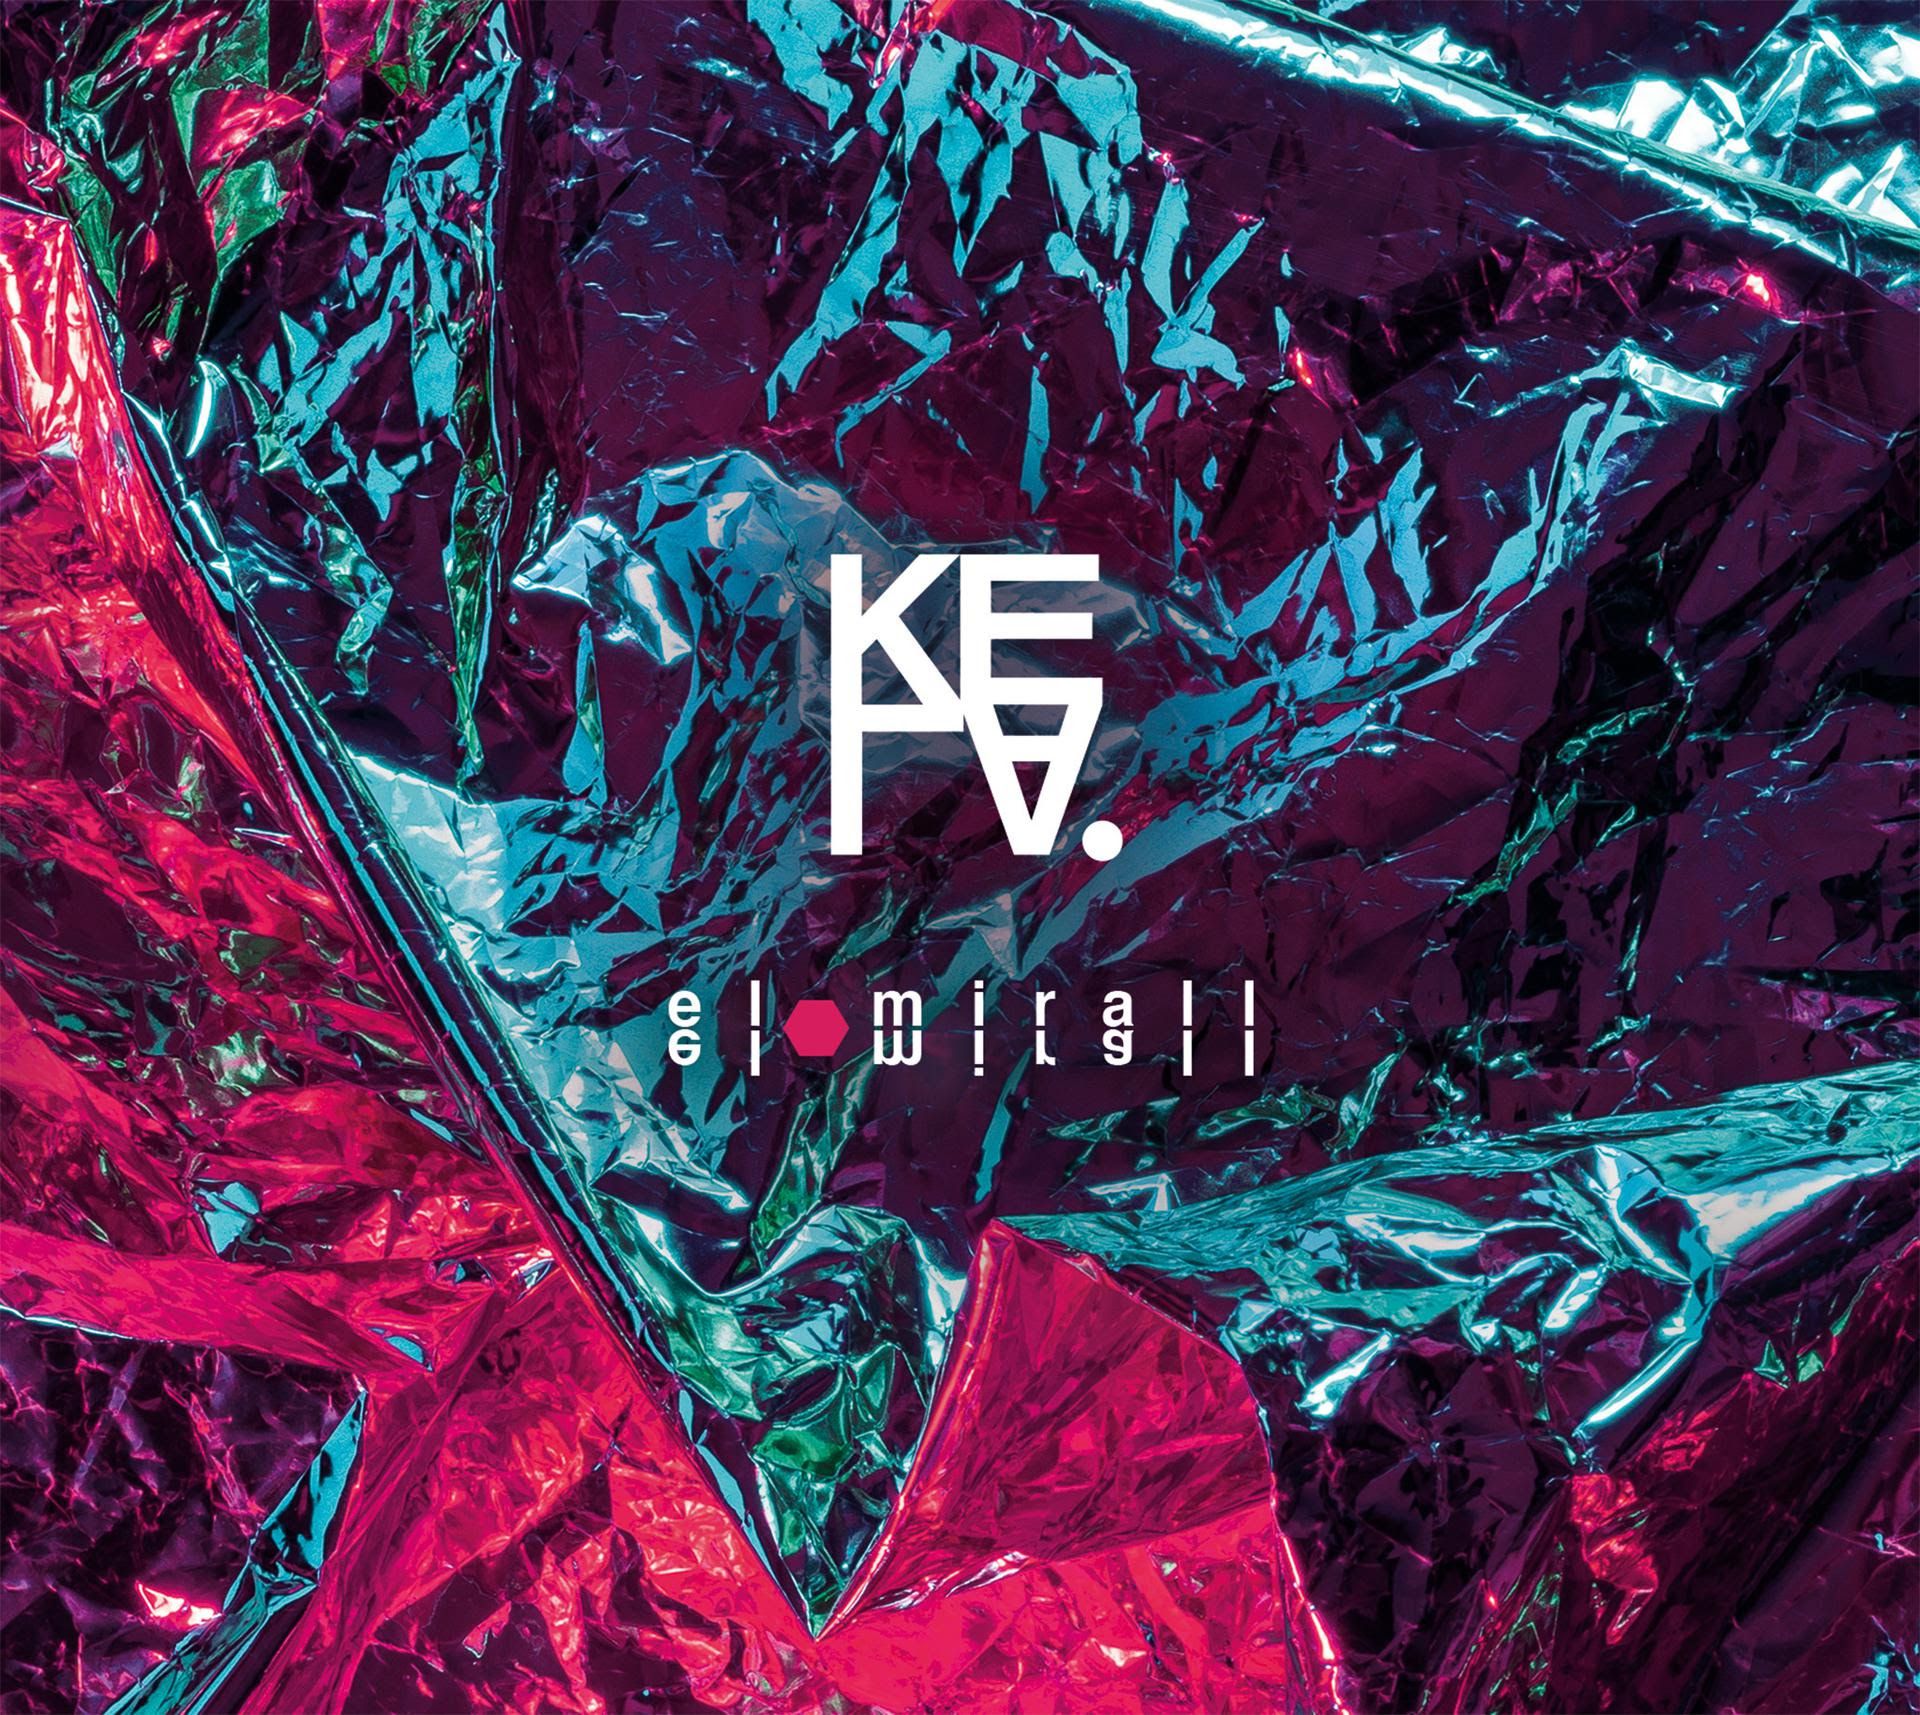 L’artista valenciana Kela estrena el seu primer disc, El Mirall